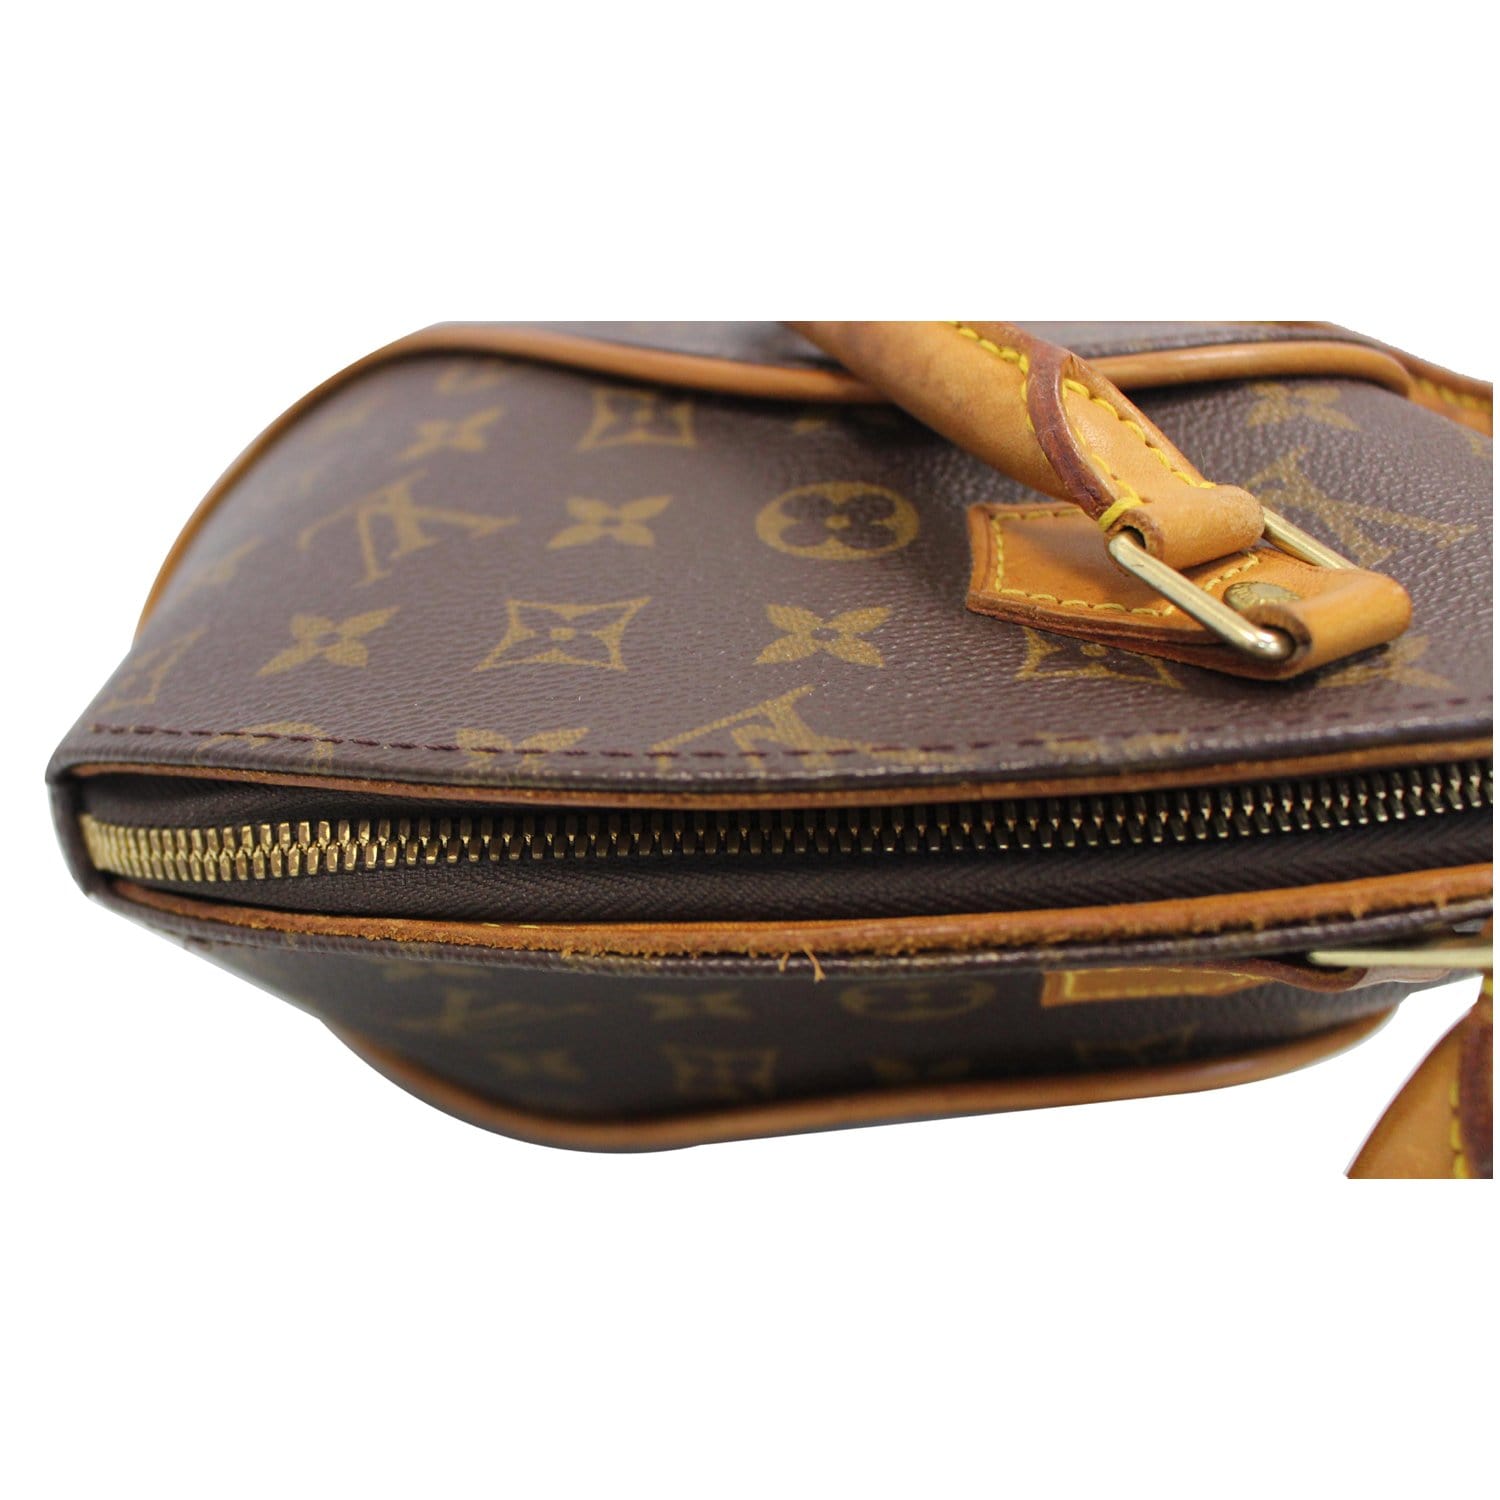 Louis Vuitton Ellipse Bag Match Monogram Canvas BB - ShopStyle